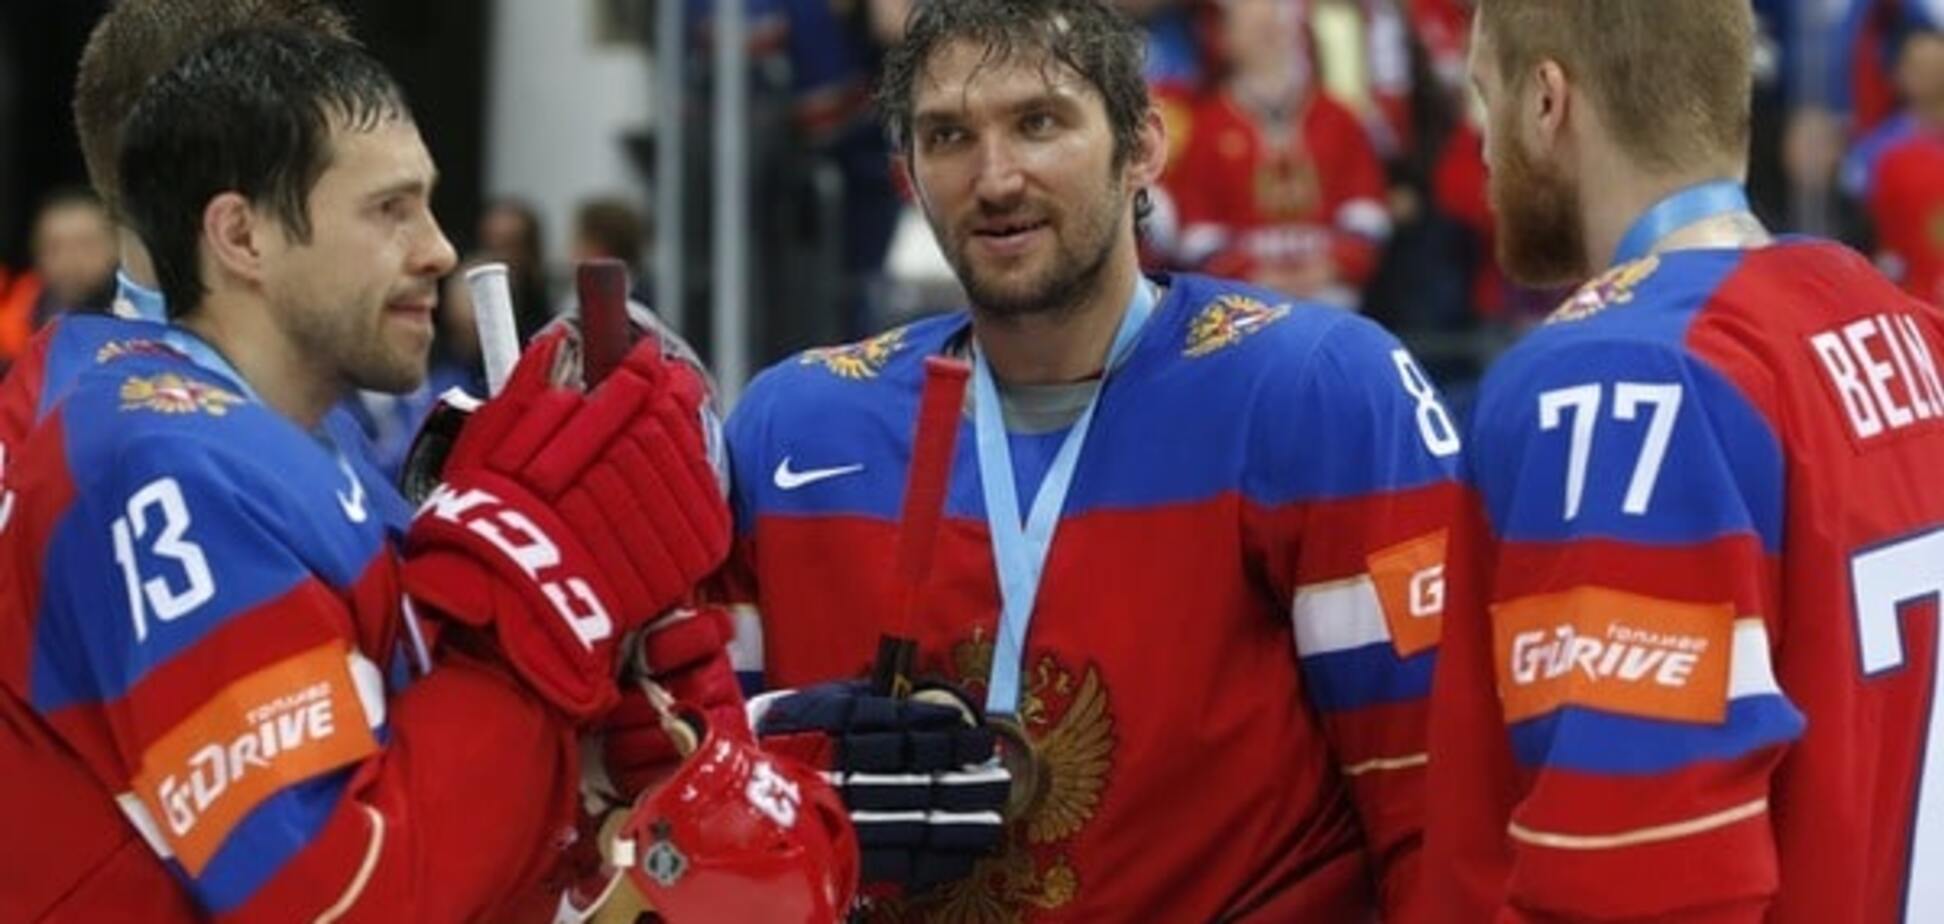 Сборная России придумала крайне 'оригинальный' слоган на английском языке для Кубка мира по хоккею